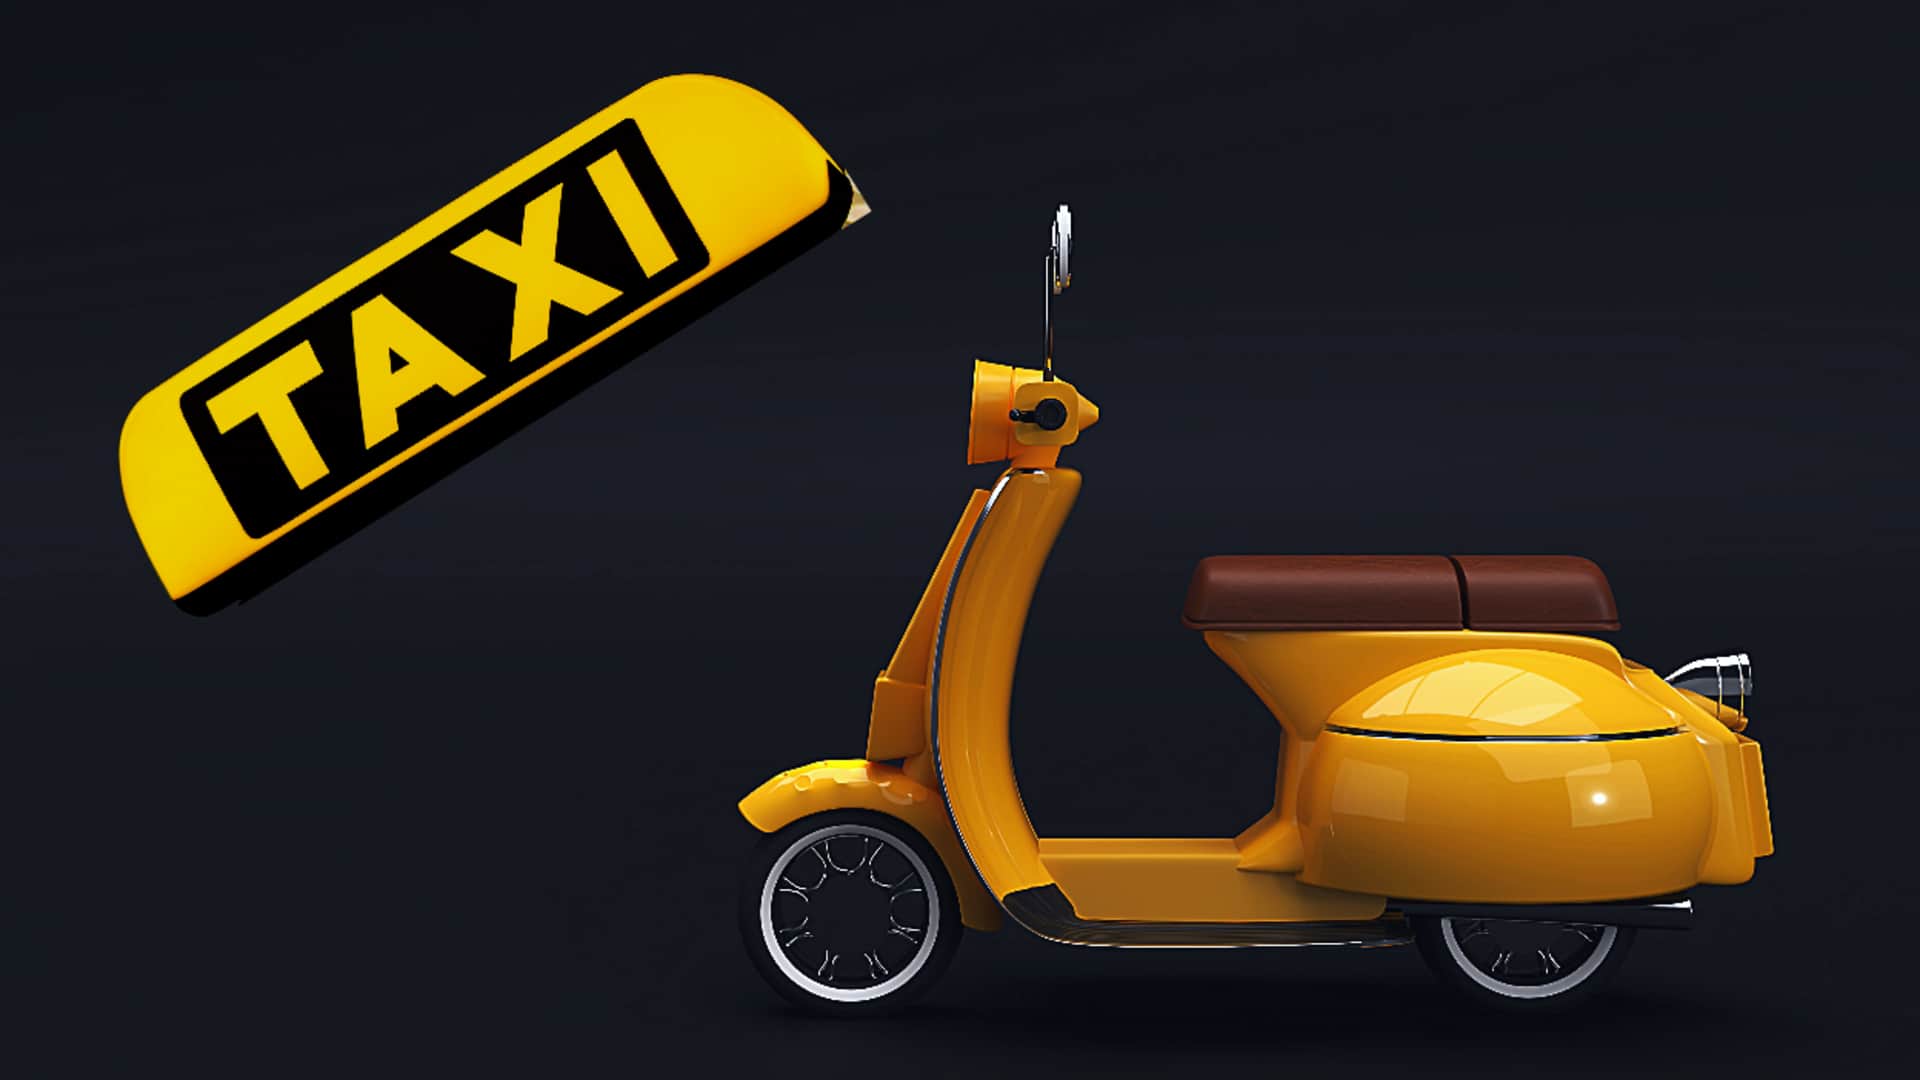 दिल्ली में बाइक टैक्सी को मिली कानूनी मंजूरी, जानिए क्या रखी हैं शर्तें